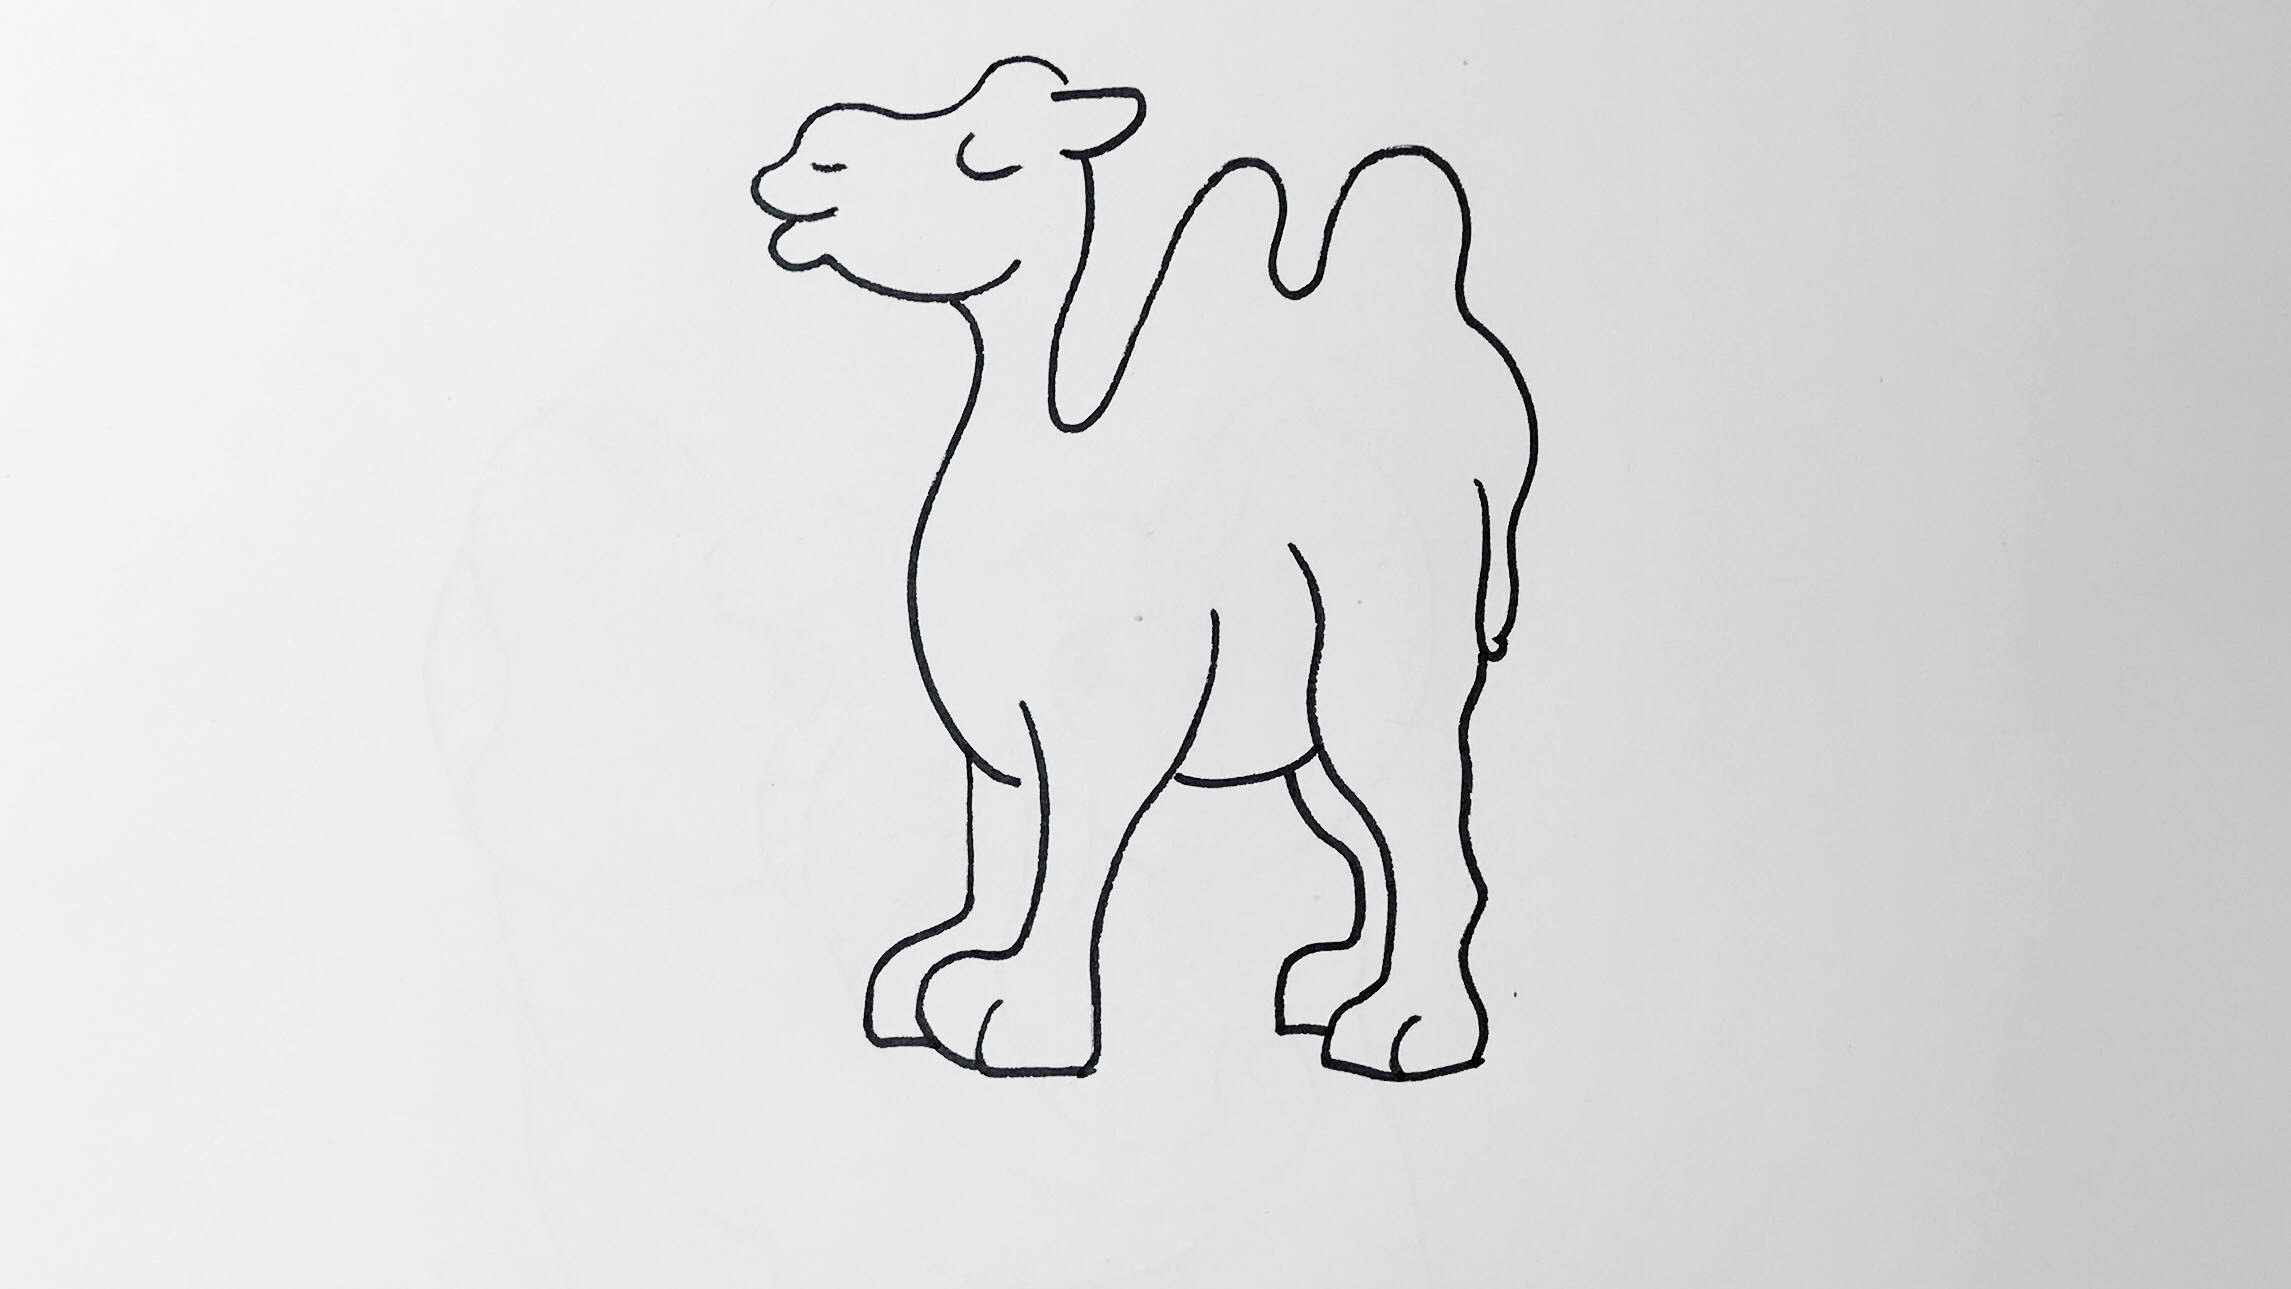 骆驼的画法简笔图片